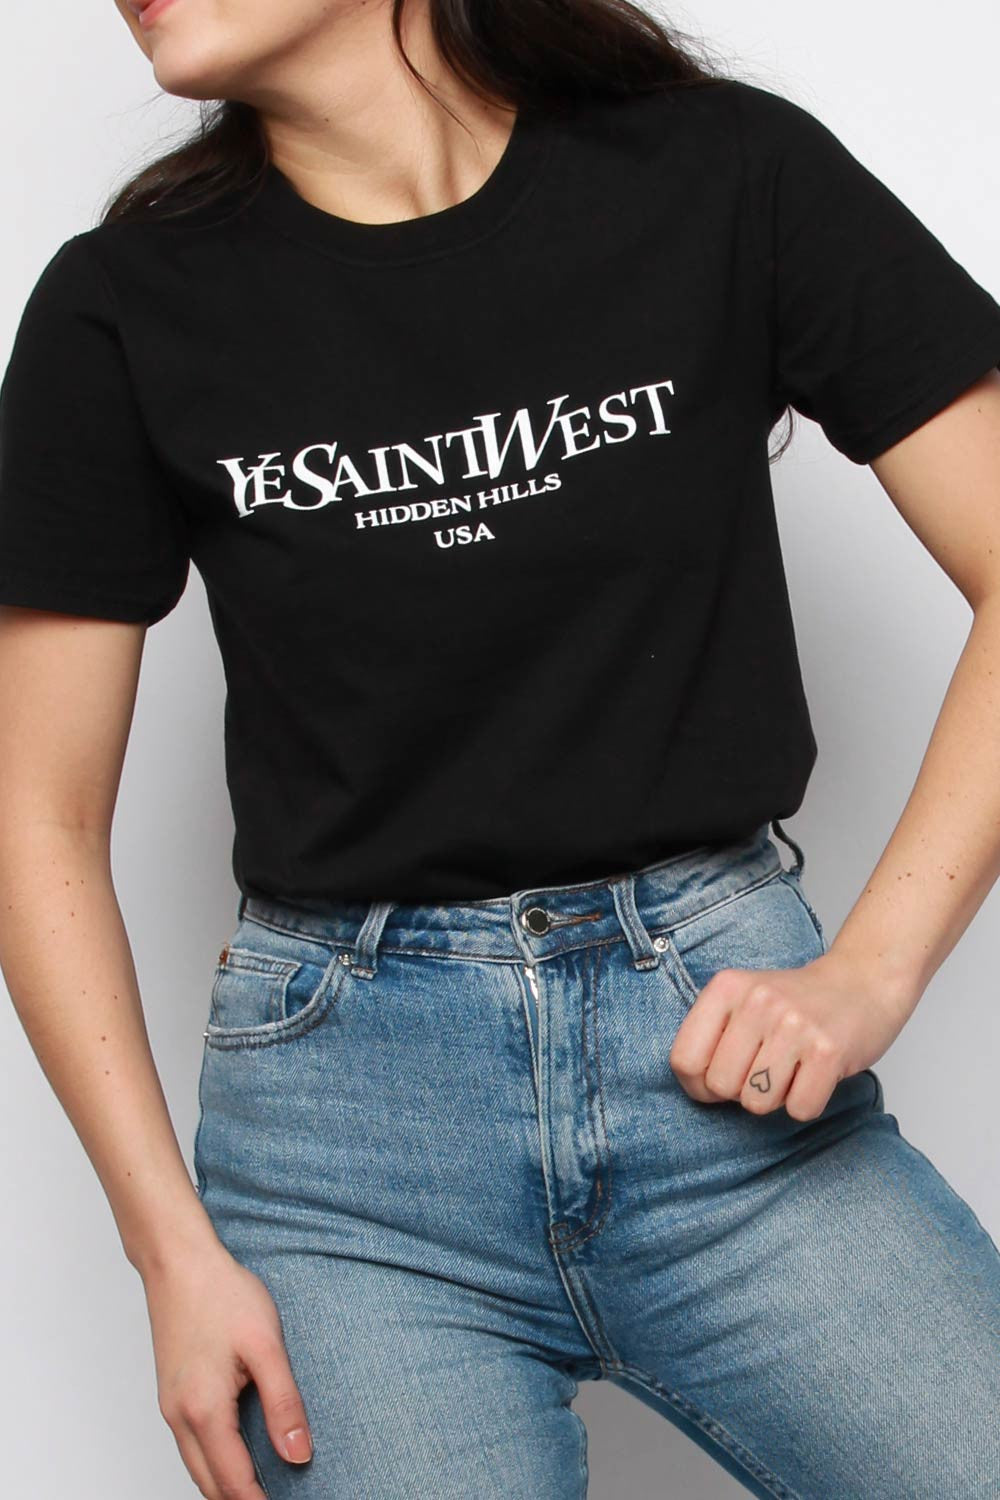 West Shirt